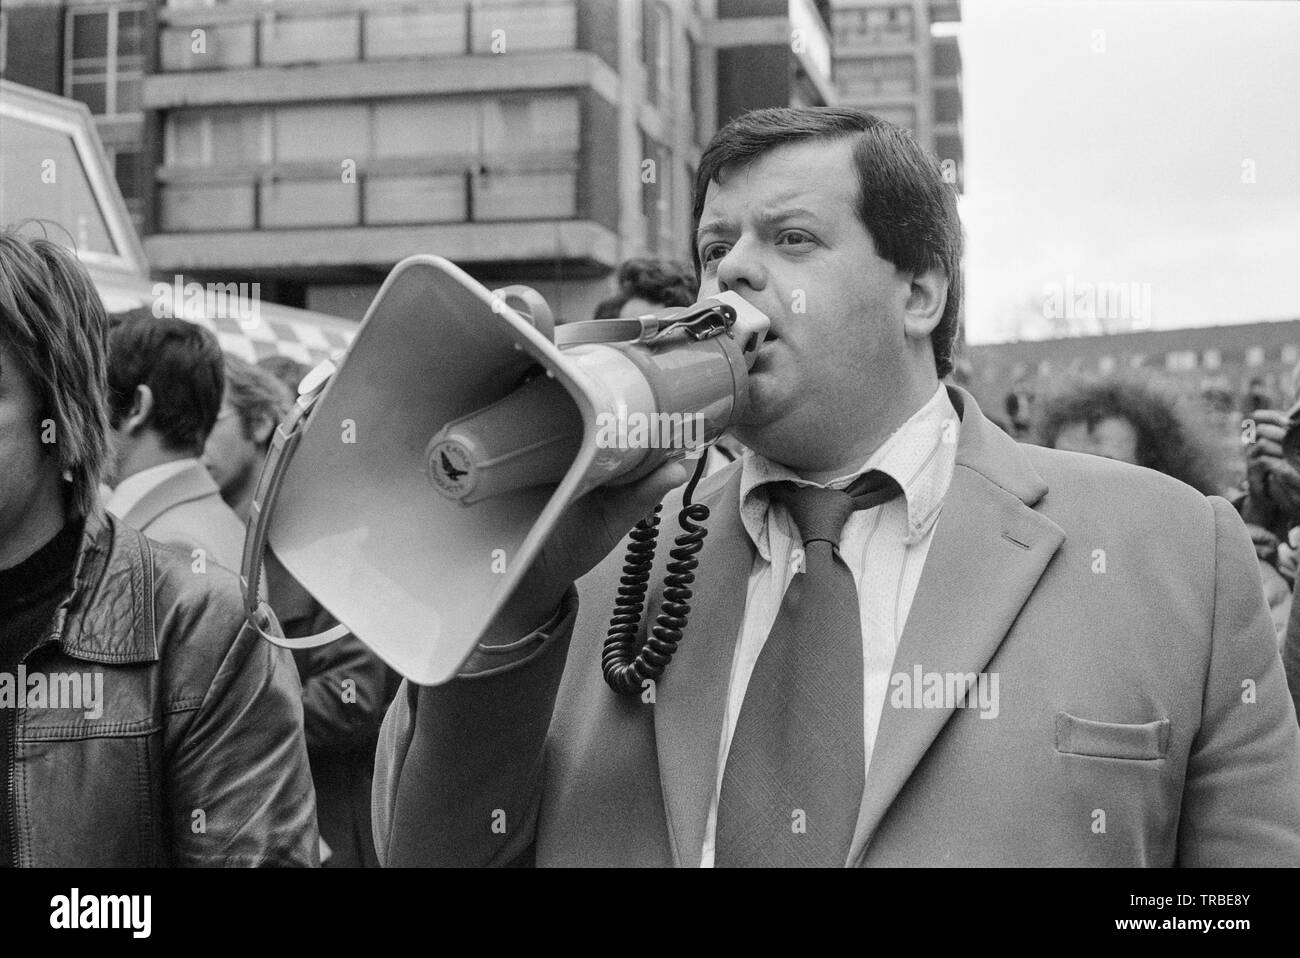 1980. Einen Marsch von der Nationalen Front, einer britischen Rechts faschistischen Partei, in Camberwell New Road, London, durch die dann Führer Martin Webster, der gesehen wird im Gespräch mit den Demonstranten durch ein Megaphon geleitet. Stockfoto